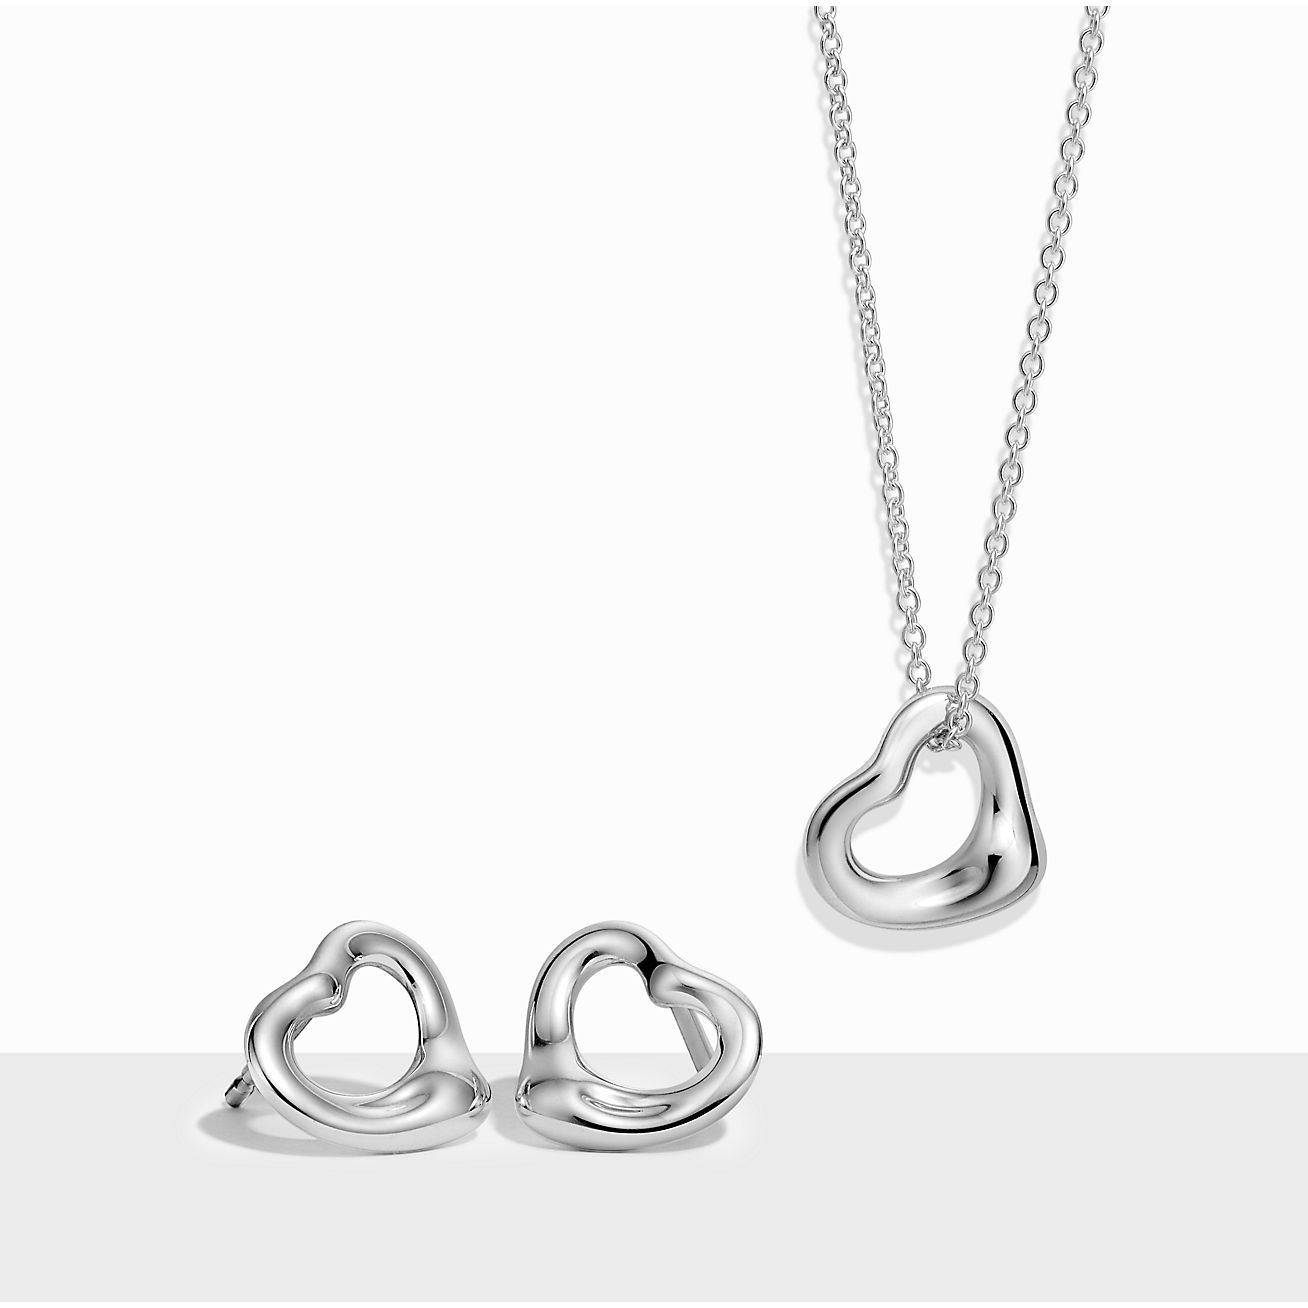 Elsa Peretti® Open Heart Pendant and Earrings Set in Sterling